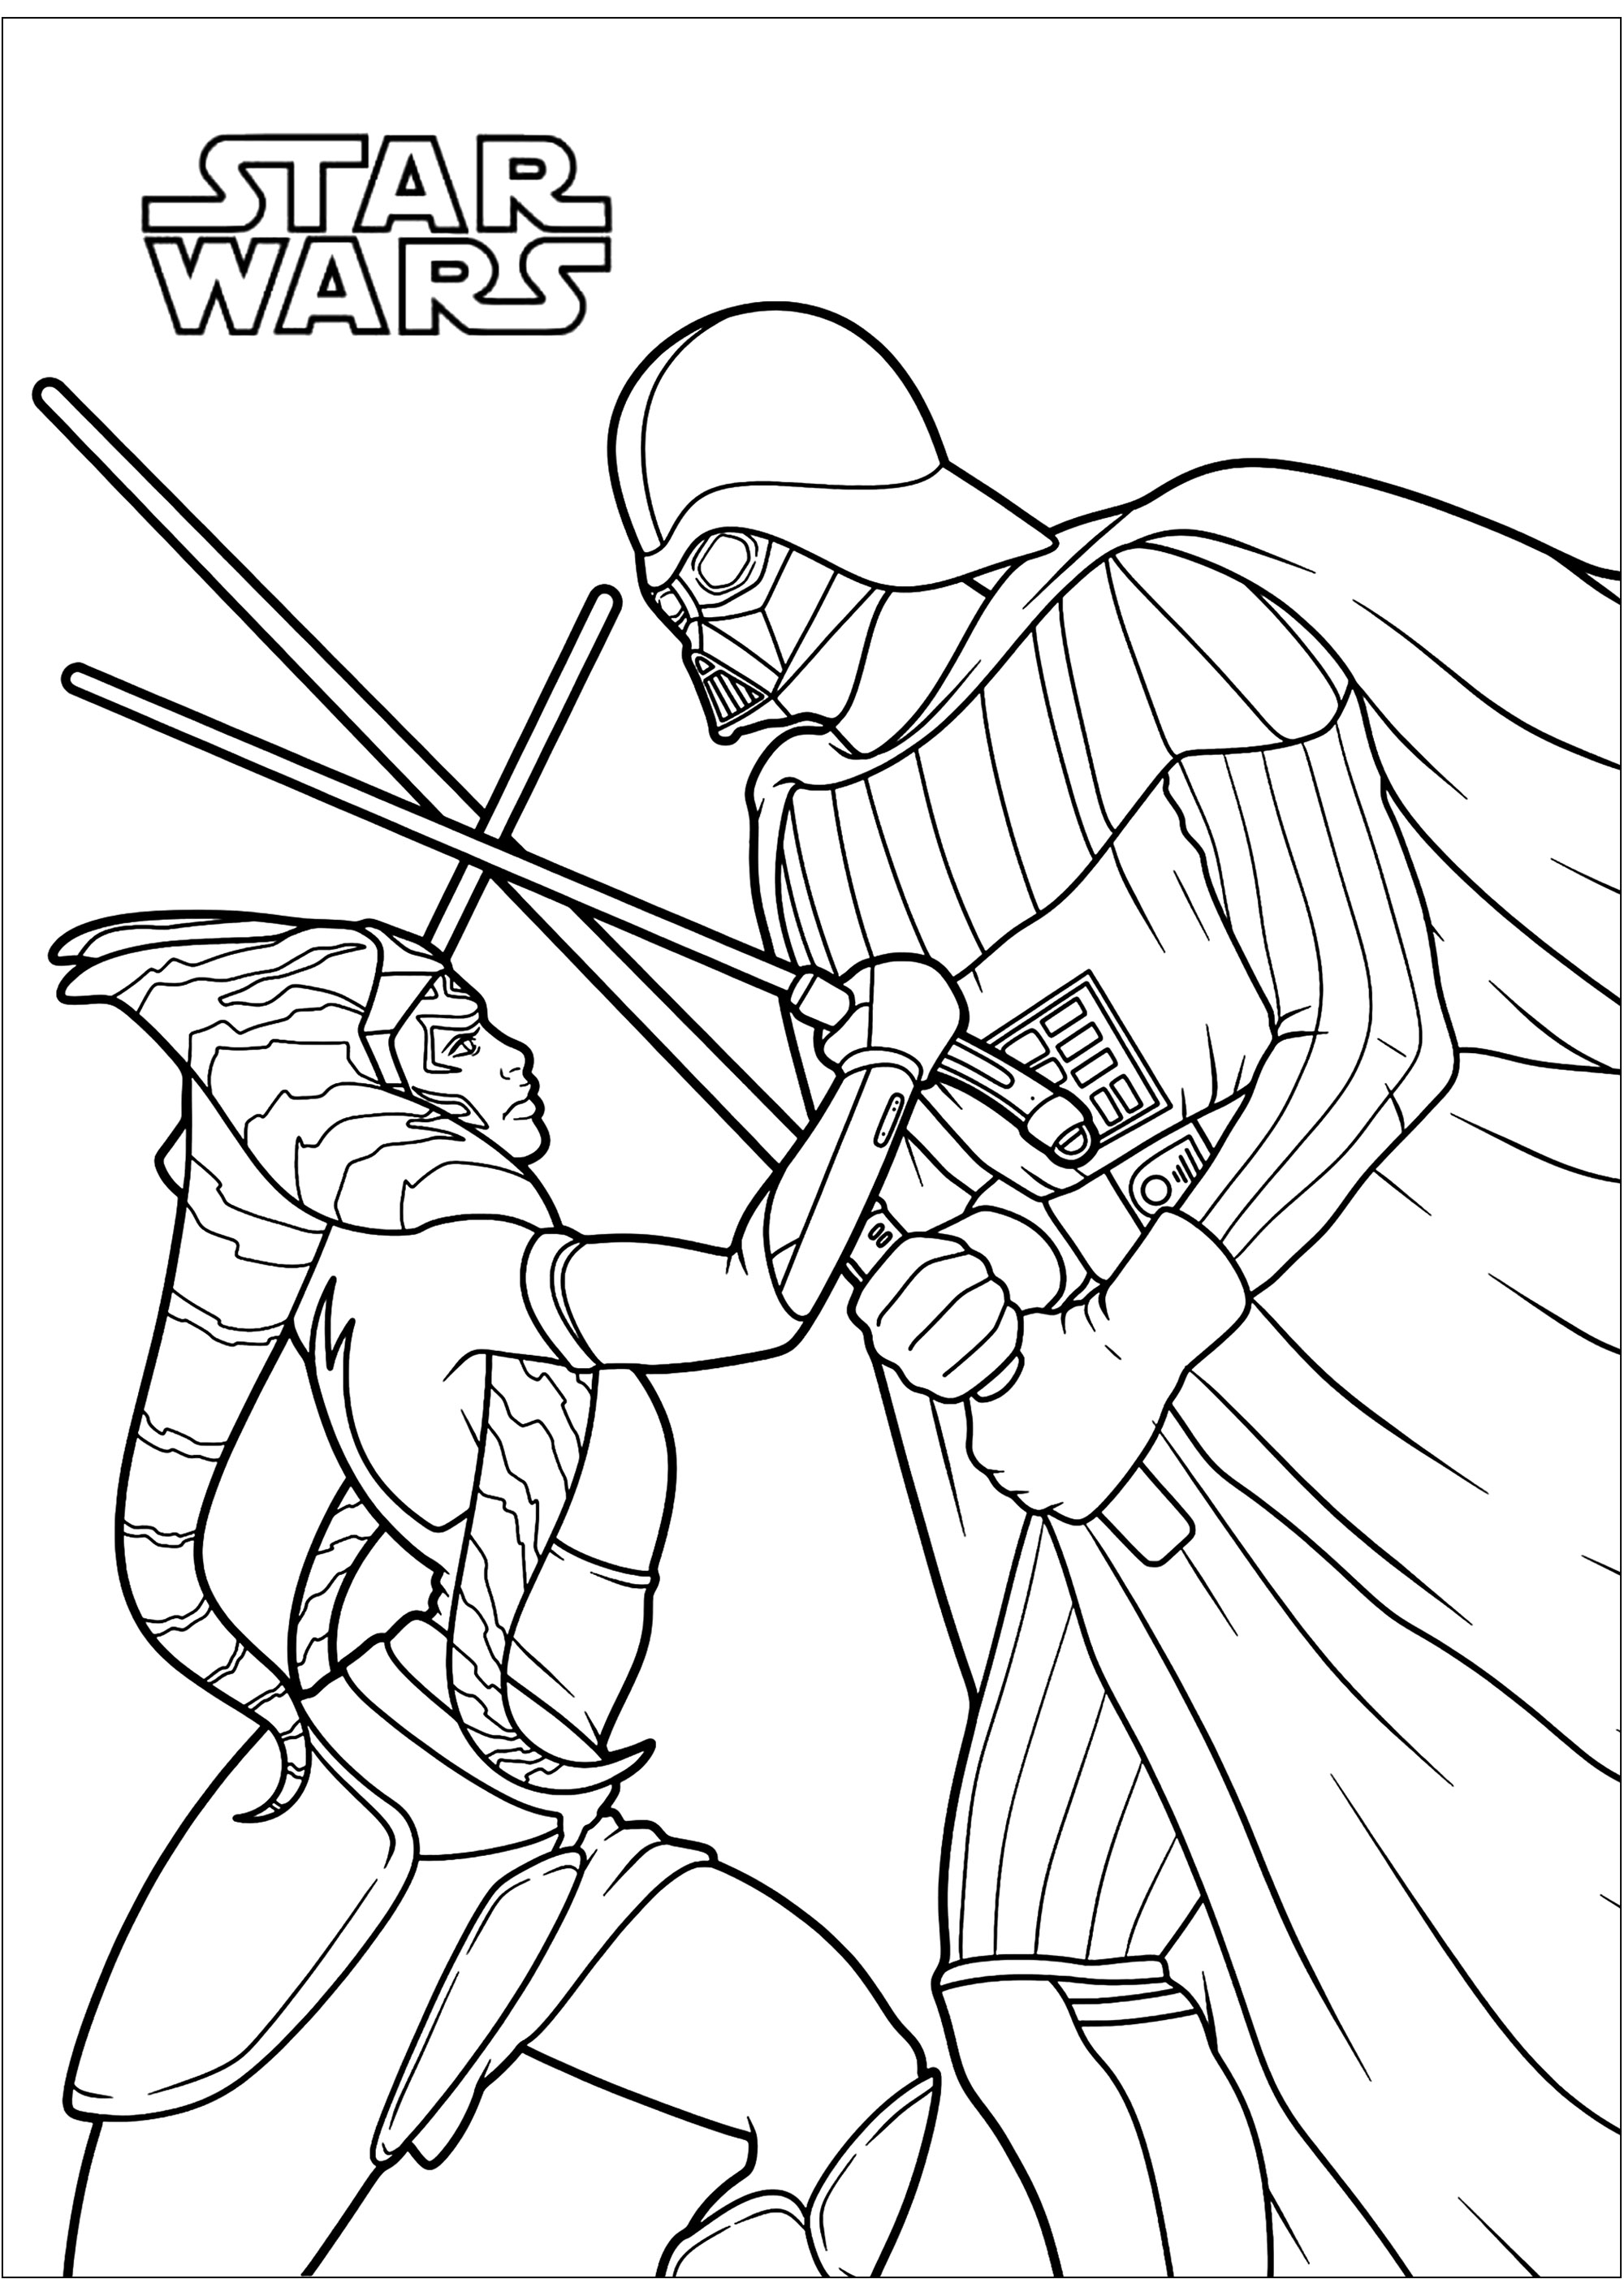 Ahsoka Tano combatte contro Darth Vader, nientemeno che il suo ex maestro Jedi Anakin Skywalker. Originaria del pianeta Shili, Ahsoka Tano fu portata su Coruscant da bambina per essere addestrata come Jedi. All'inizio delle Guerre dei Cloni, Ahsoka divenne l'apprendista di Anakin Skywalker e prese parte a numerose battaglie.